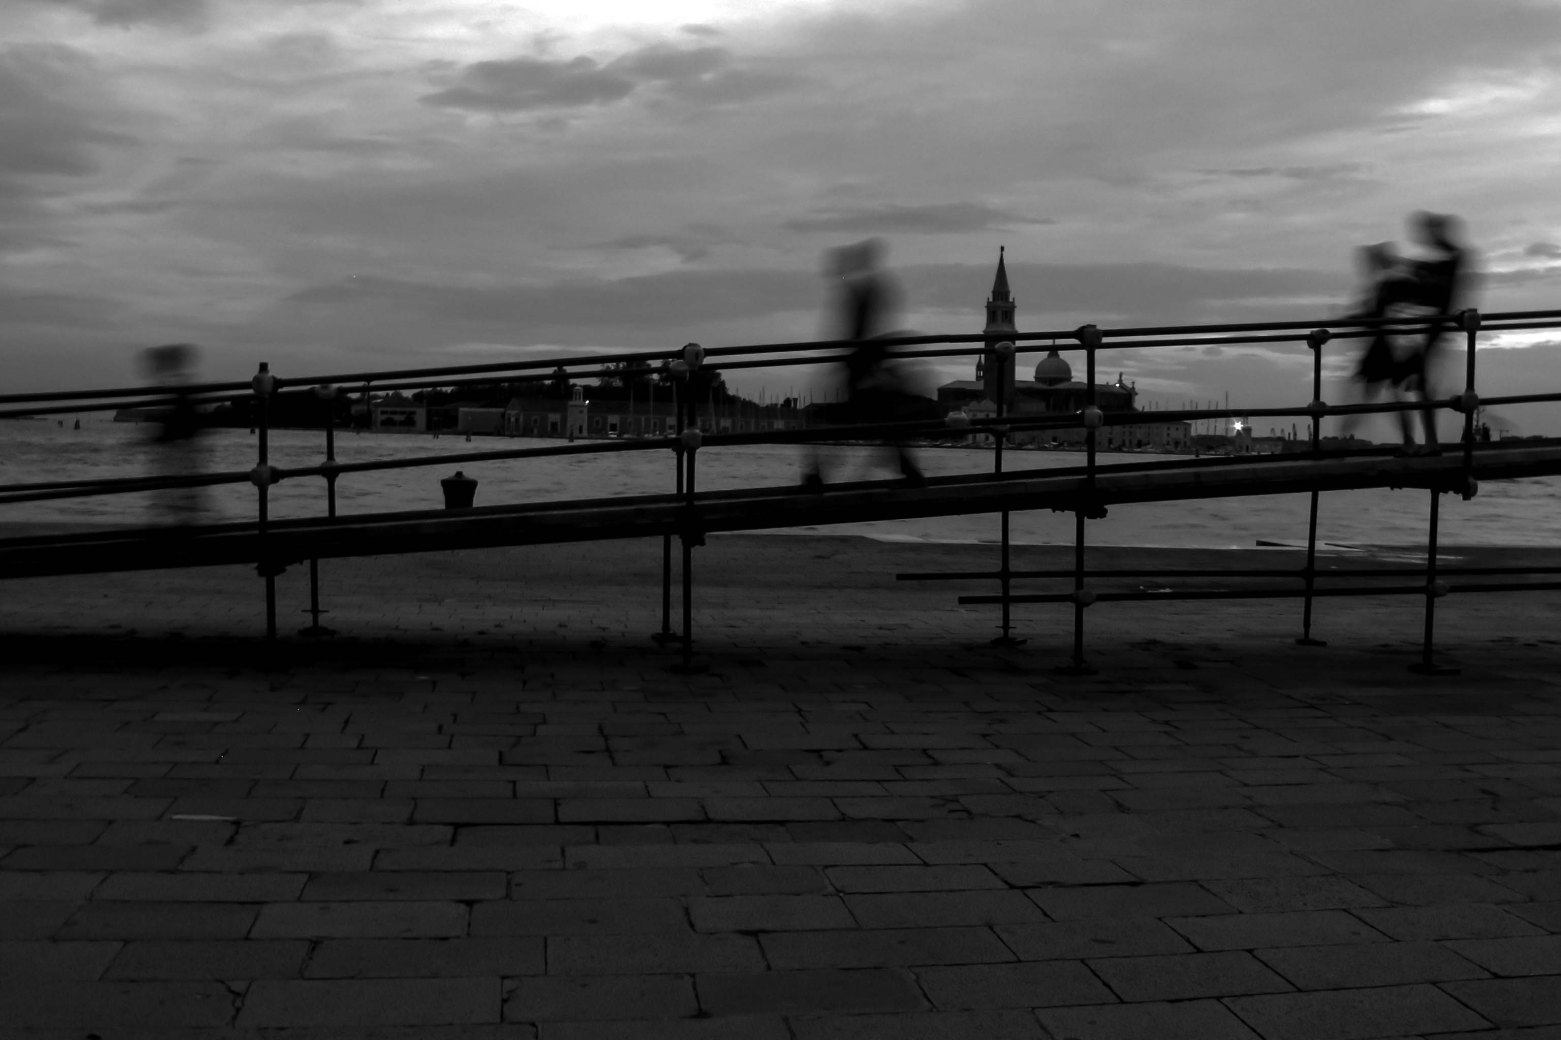 Ponteggio provvisorio a Venezia, immagine in bianco e nero di persone che passano sul ponte.